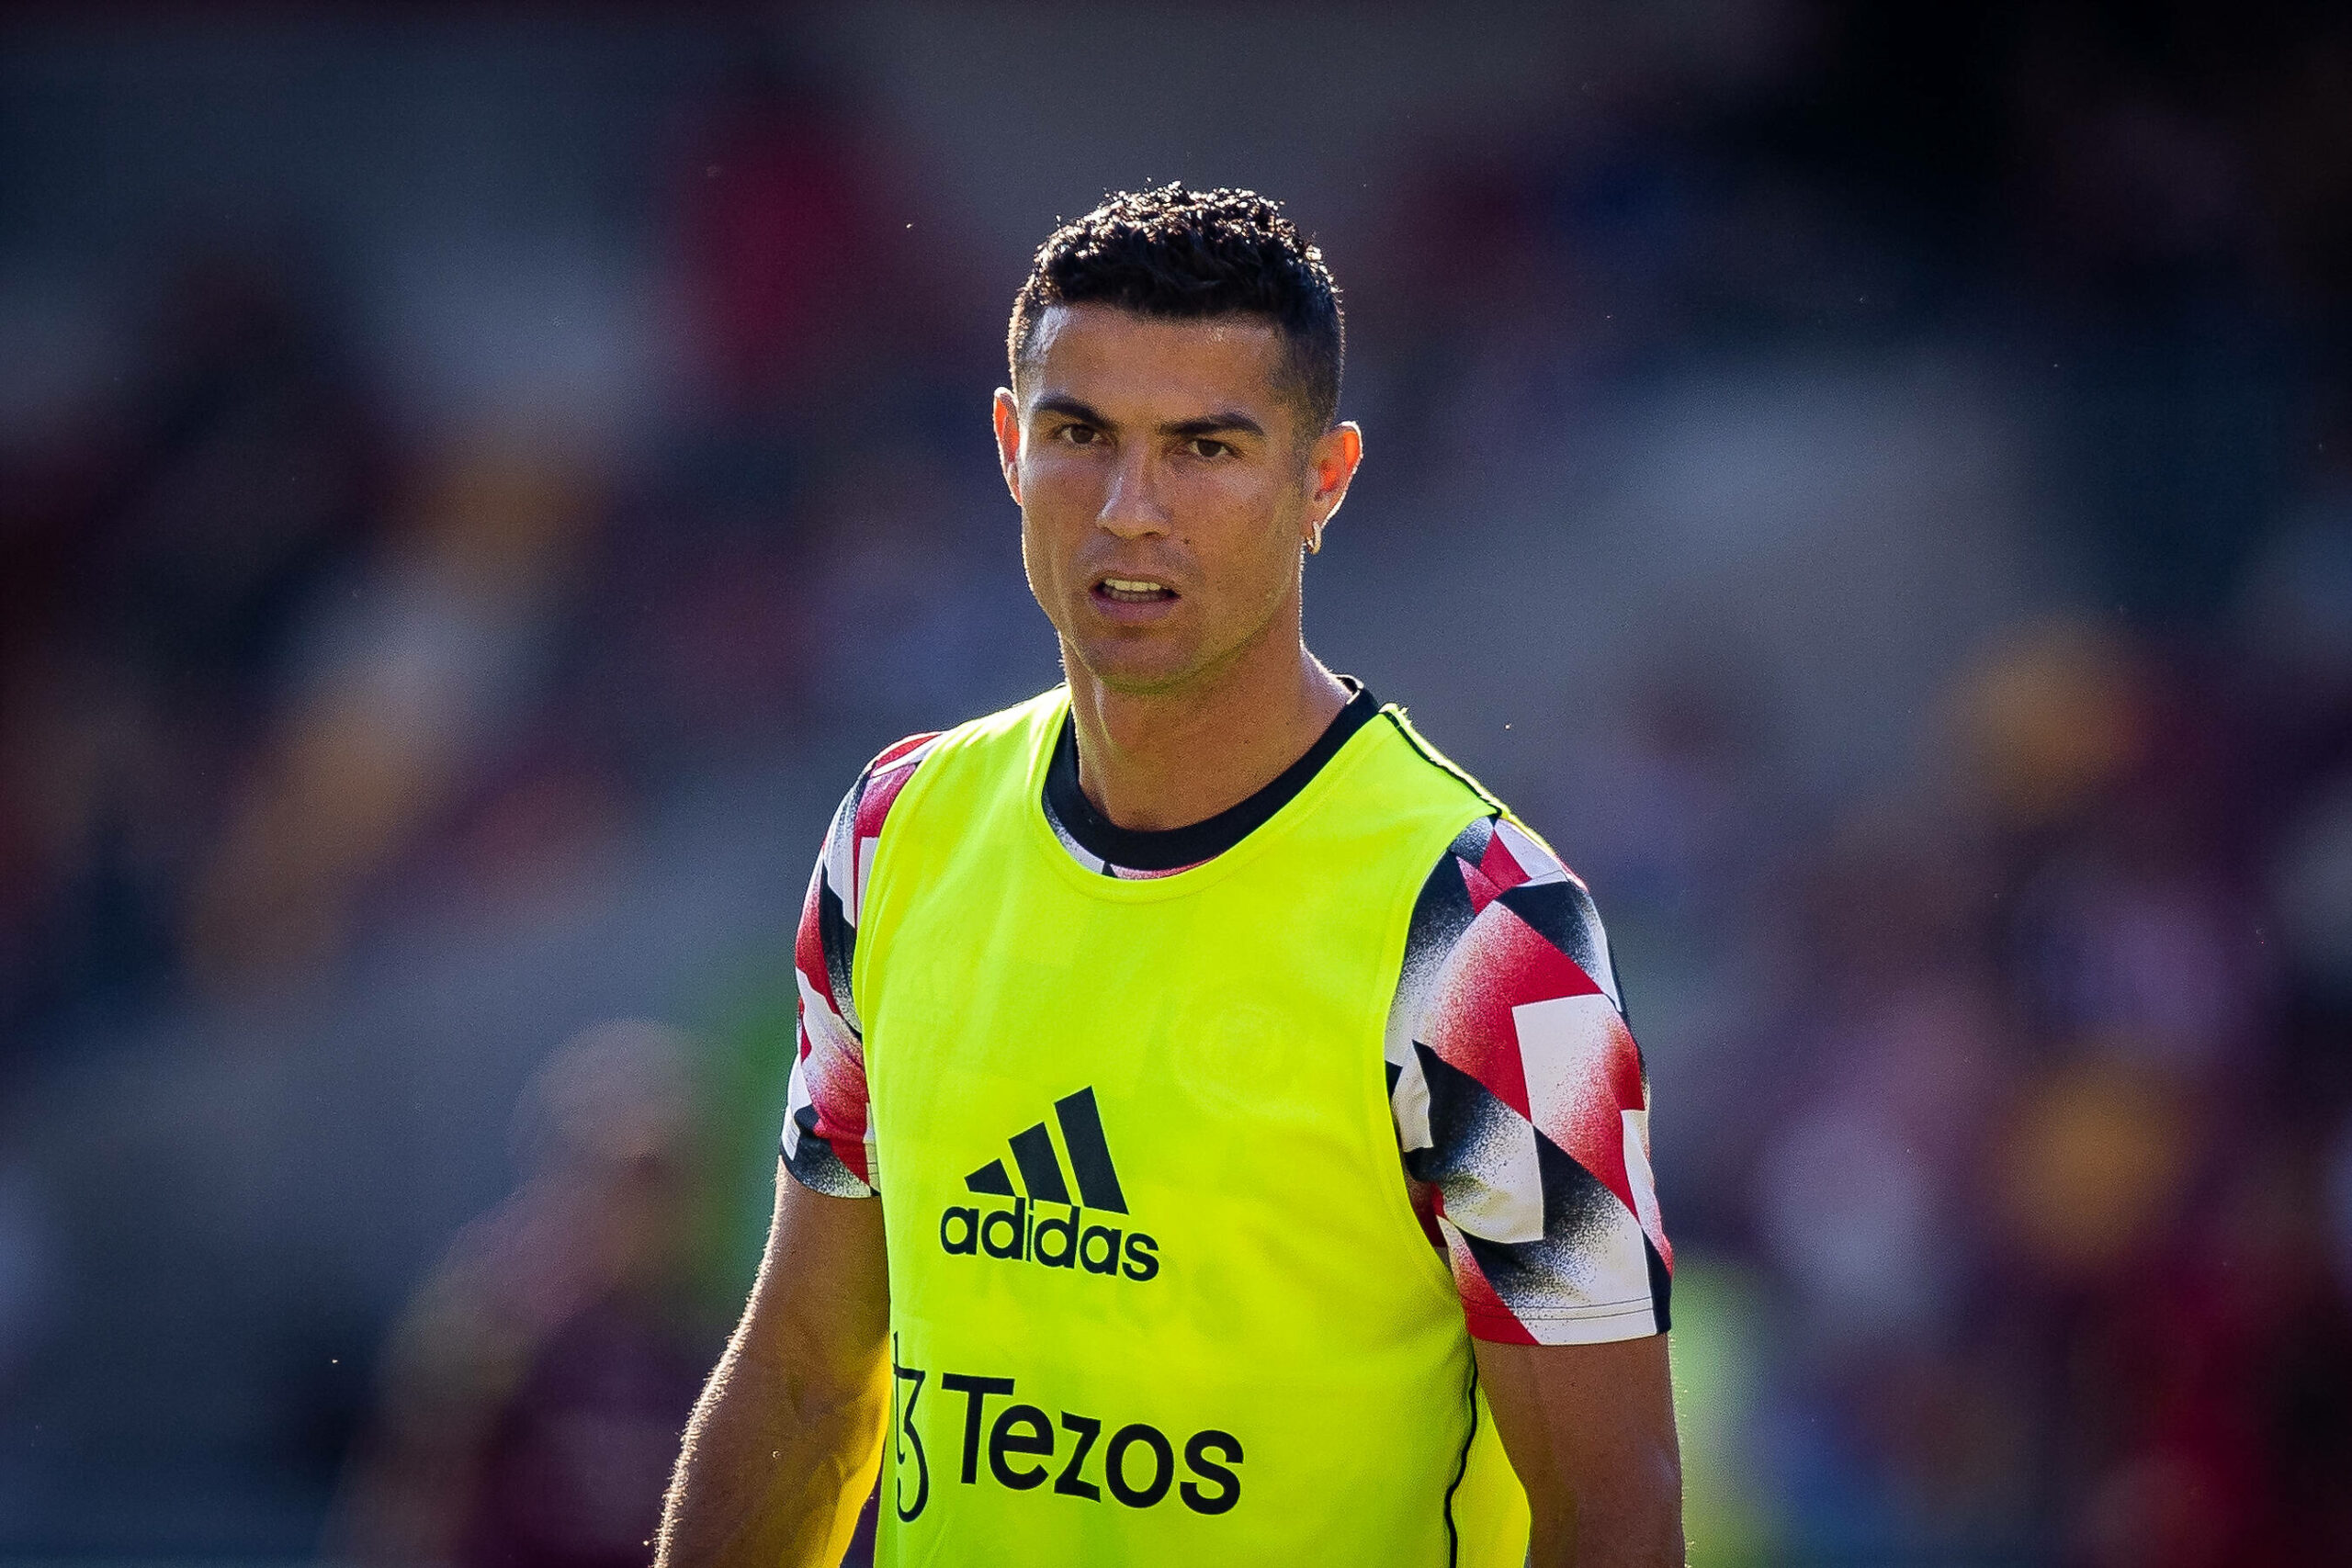 Ronaldo wird nicht bei Borussia Dortmund spielen, wie Sportdirektor Kehl nochmal deutlich machte.